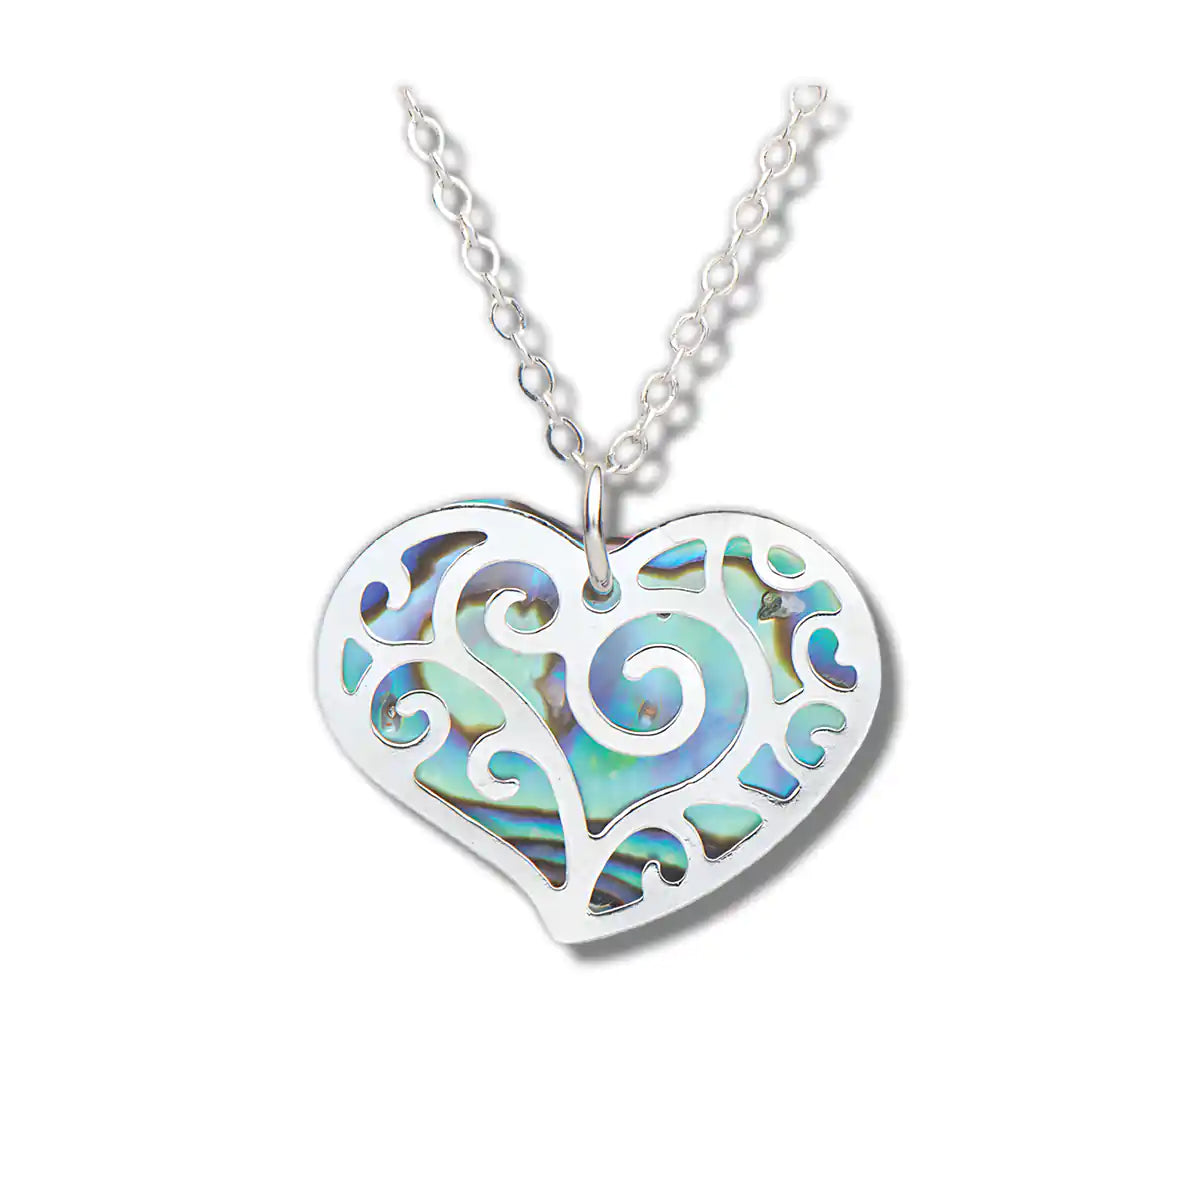 Glacier pearle filigree hearts necklace